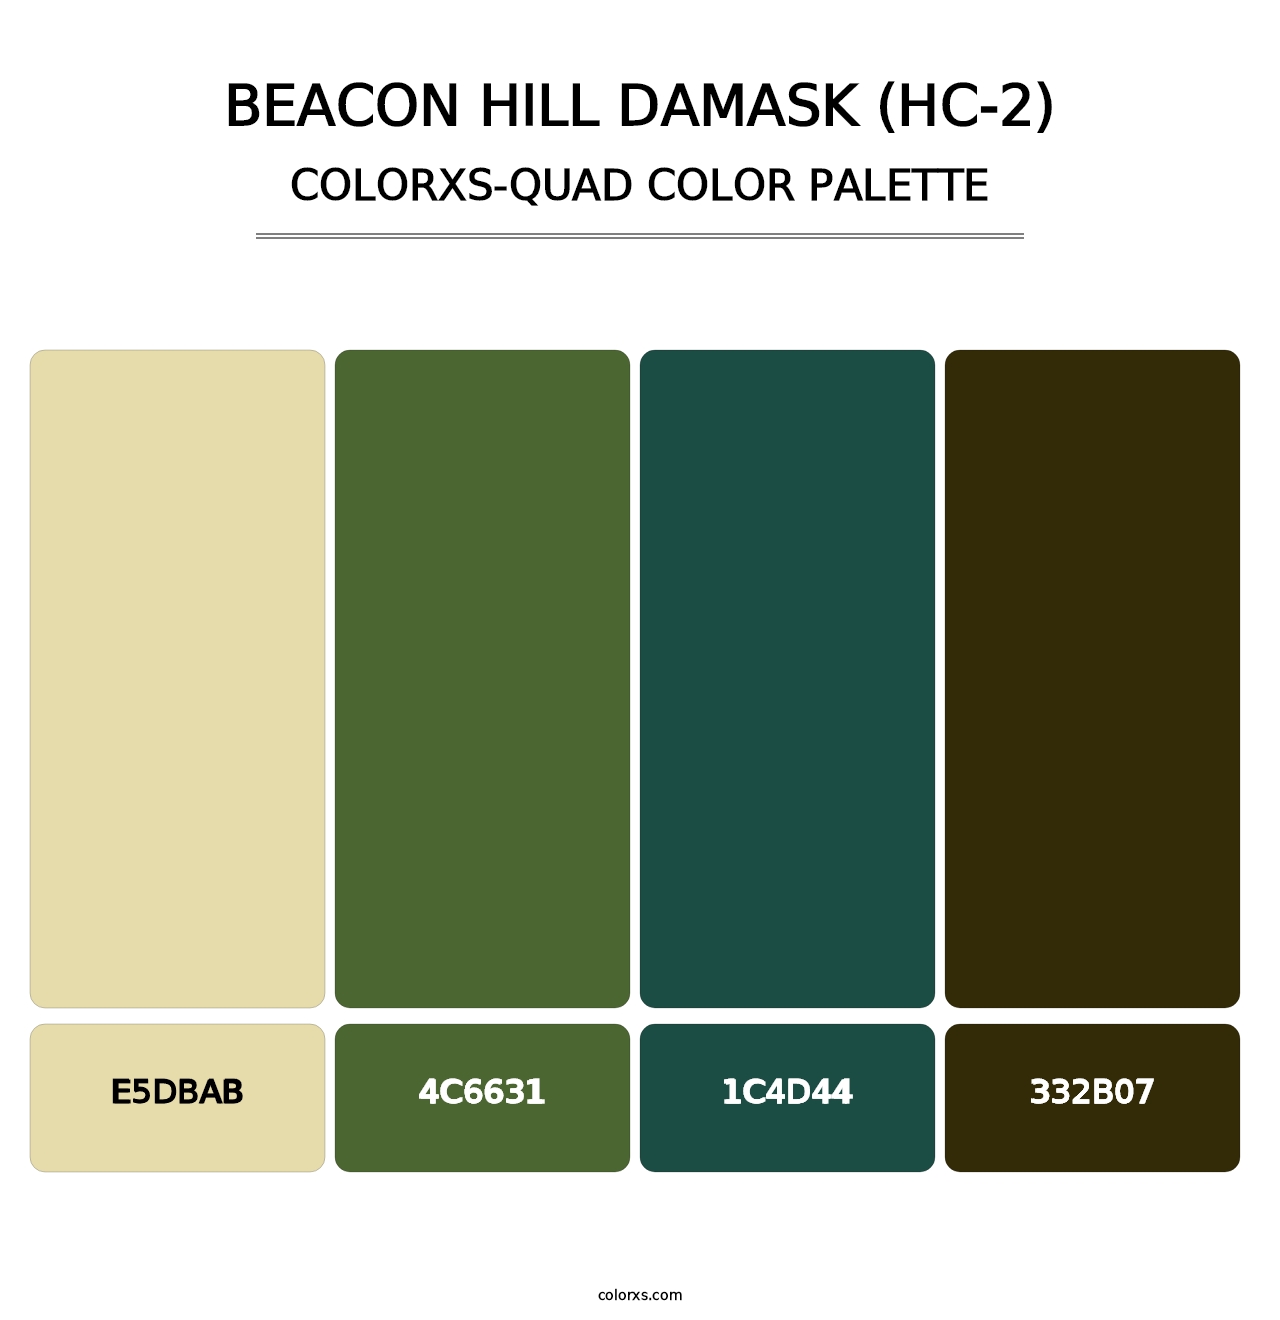 Beacon Hill Damask (HC-2) - Colorxs Quad Palette